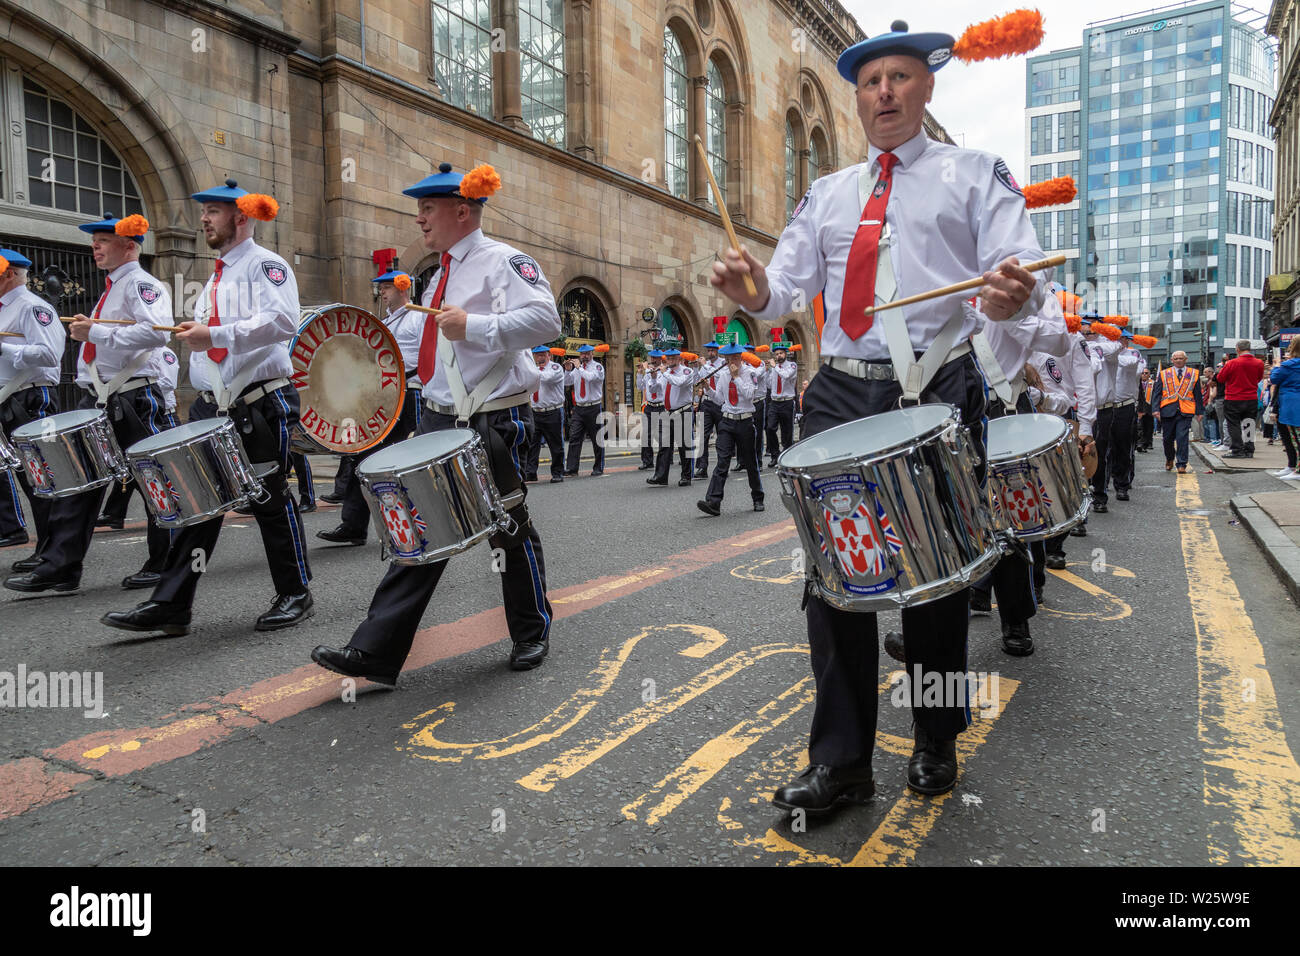 Il 2019 annuale di Orange Walk in Glasgow attrae migliaia di spettatori e partecipanti. La parata quest anno è di prendere un percorso modificato dopo un incidente nel 2018 in cui un sacerdote cattolico è stato battibecco su. Foto Stock